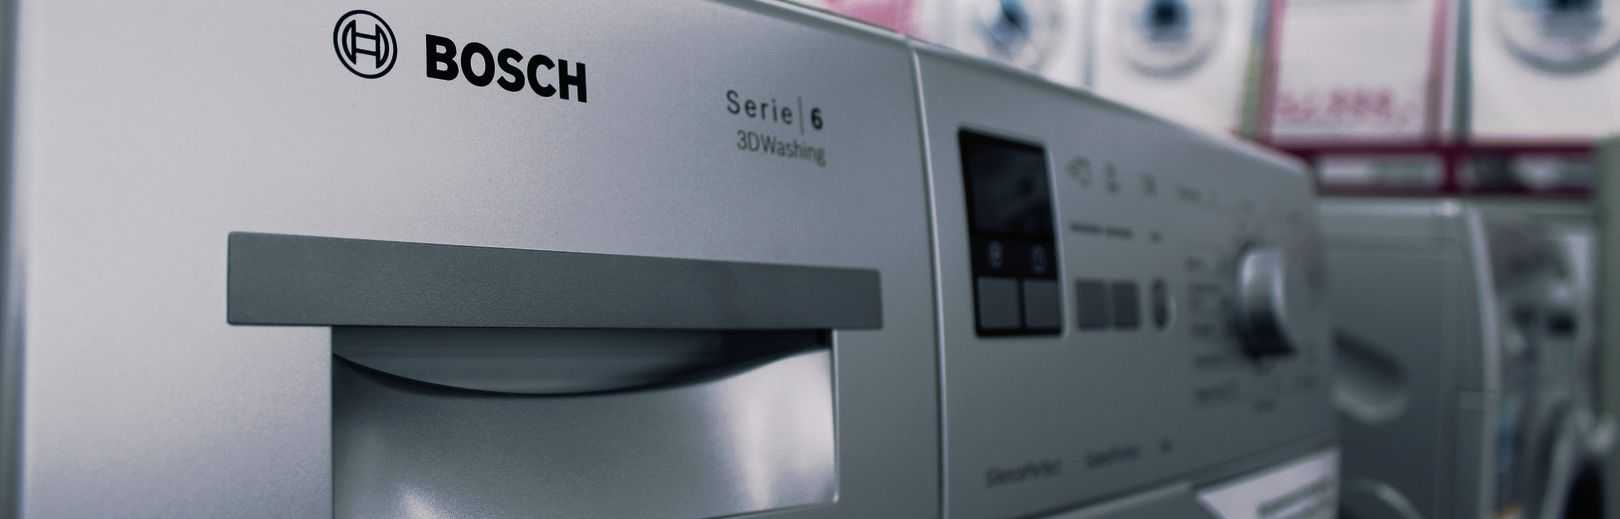 Какая стиральная машина лучше - lg или bosch?